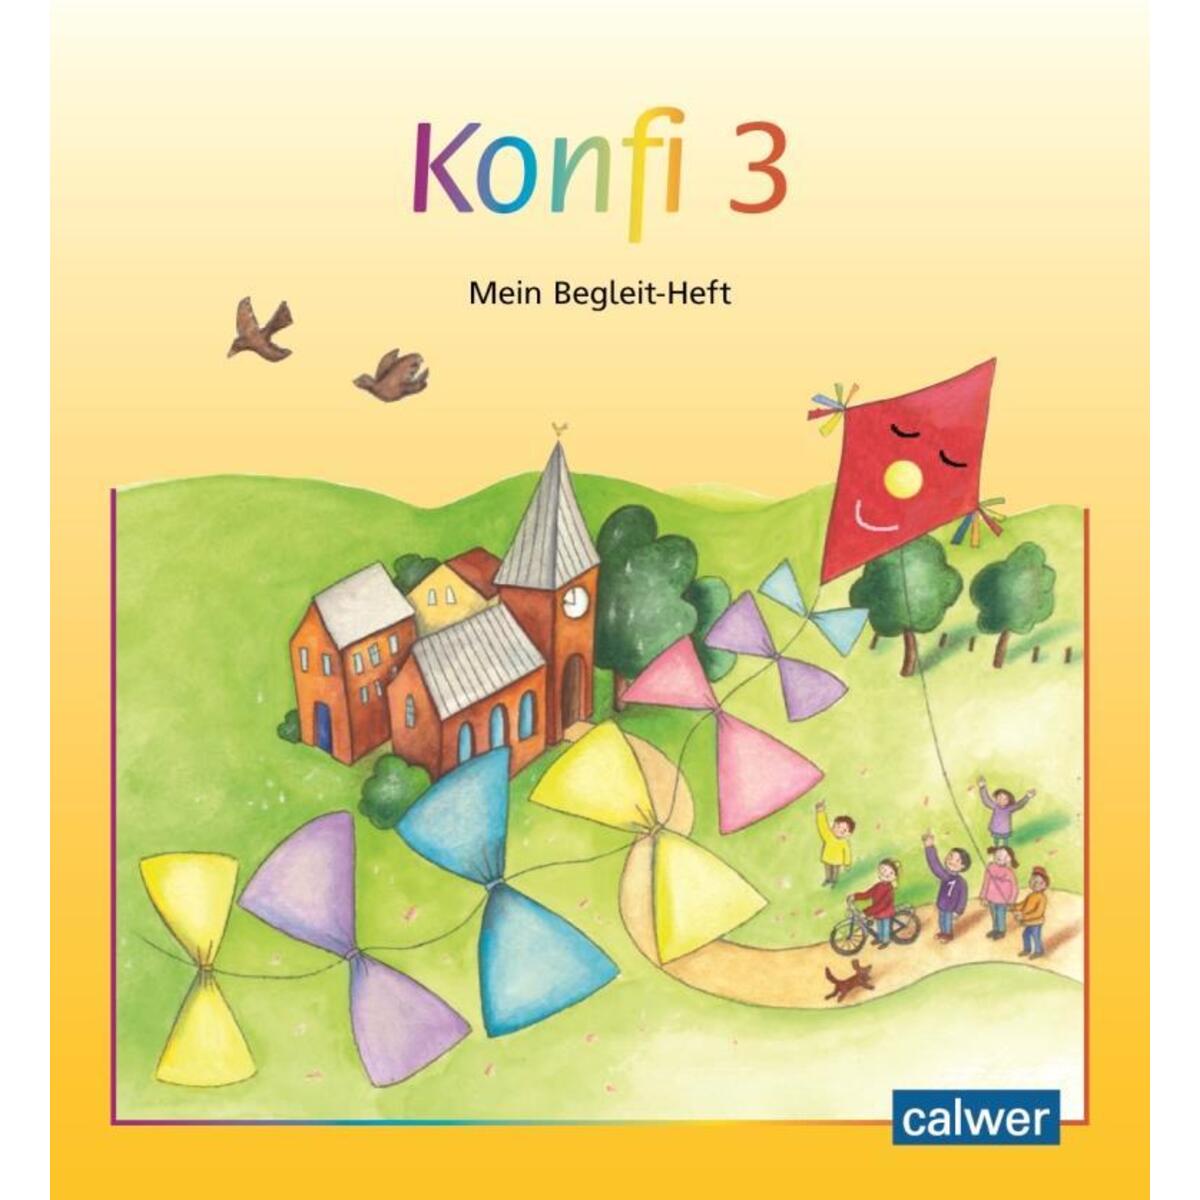 Konfi 3 von Calwer Verlag GmbH